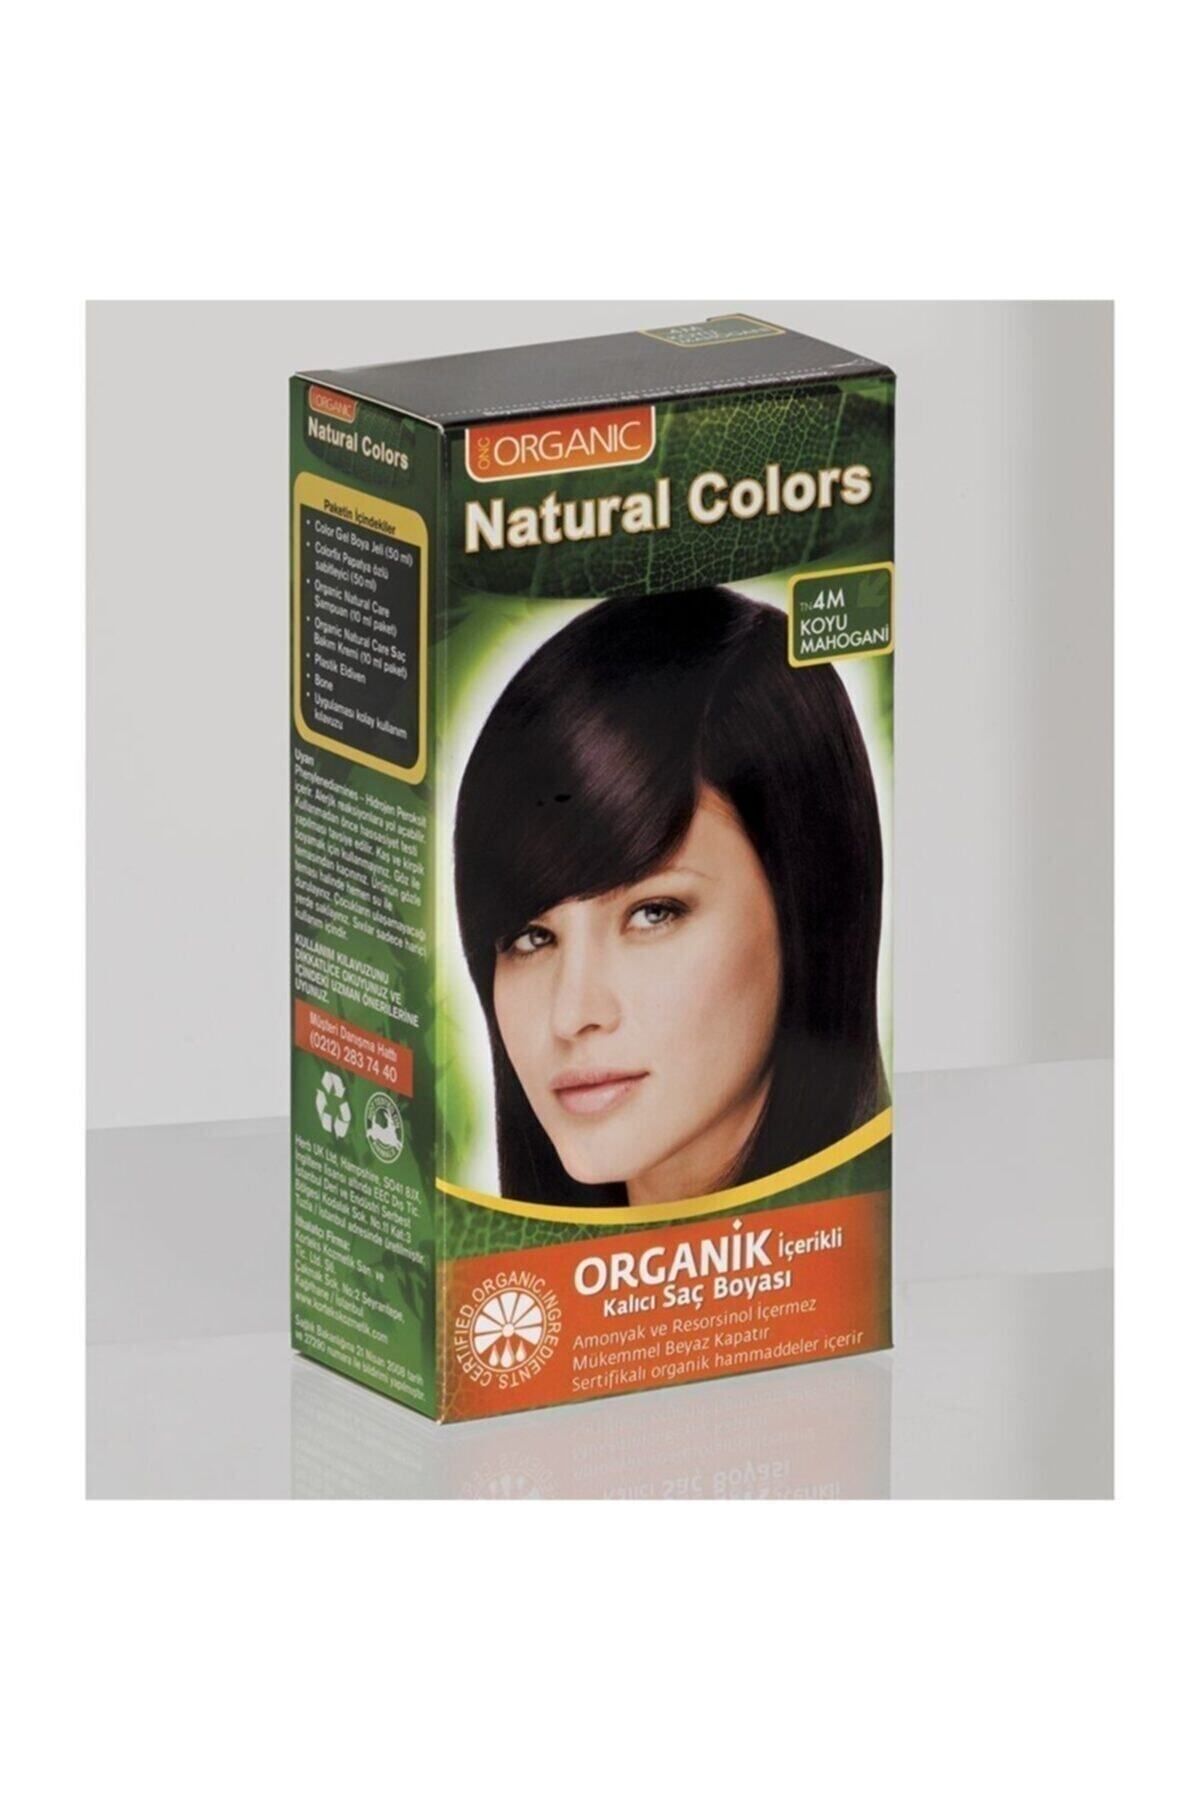 Organic Natural Colors Natural Colors 4m Koyu Mahogani Organik Saç Boyası